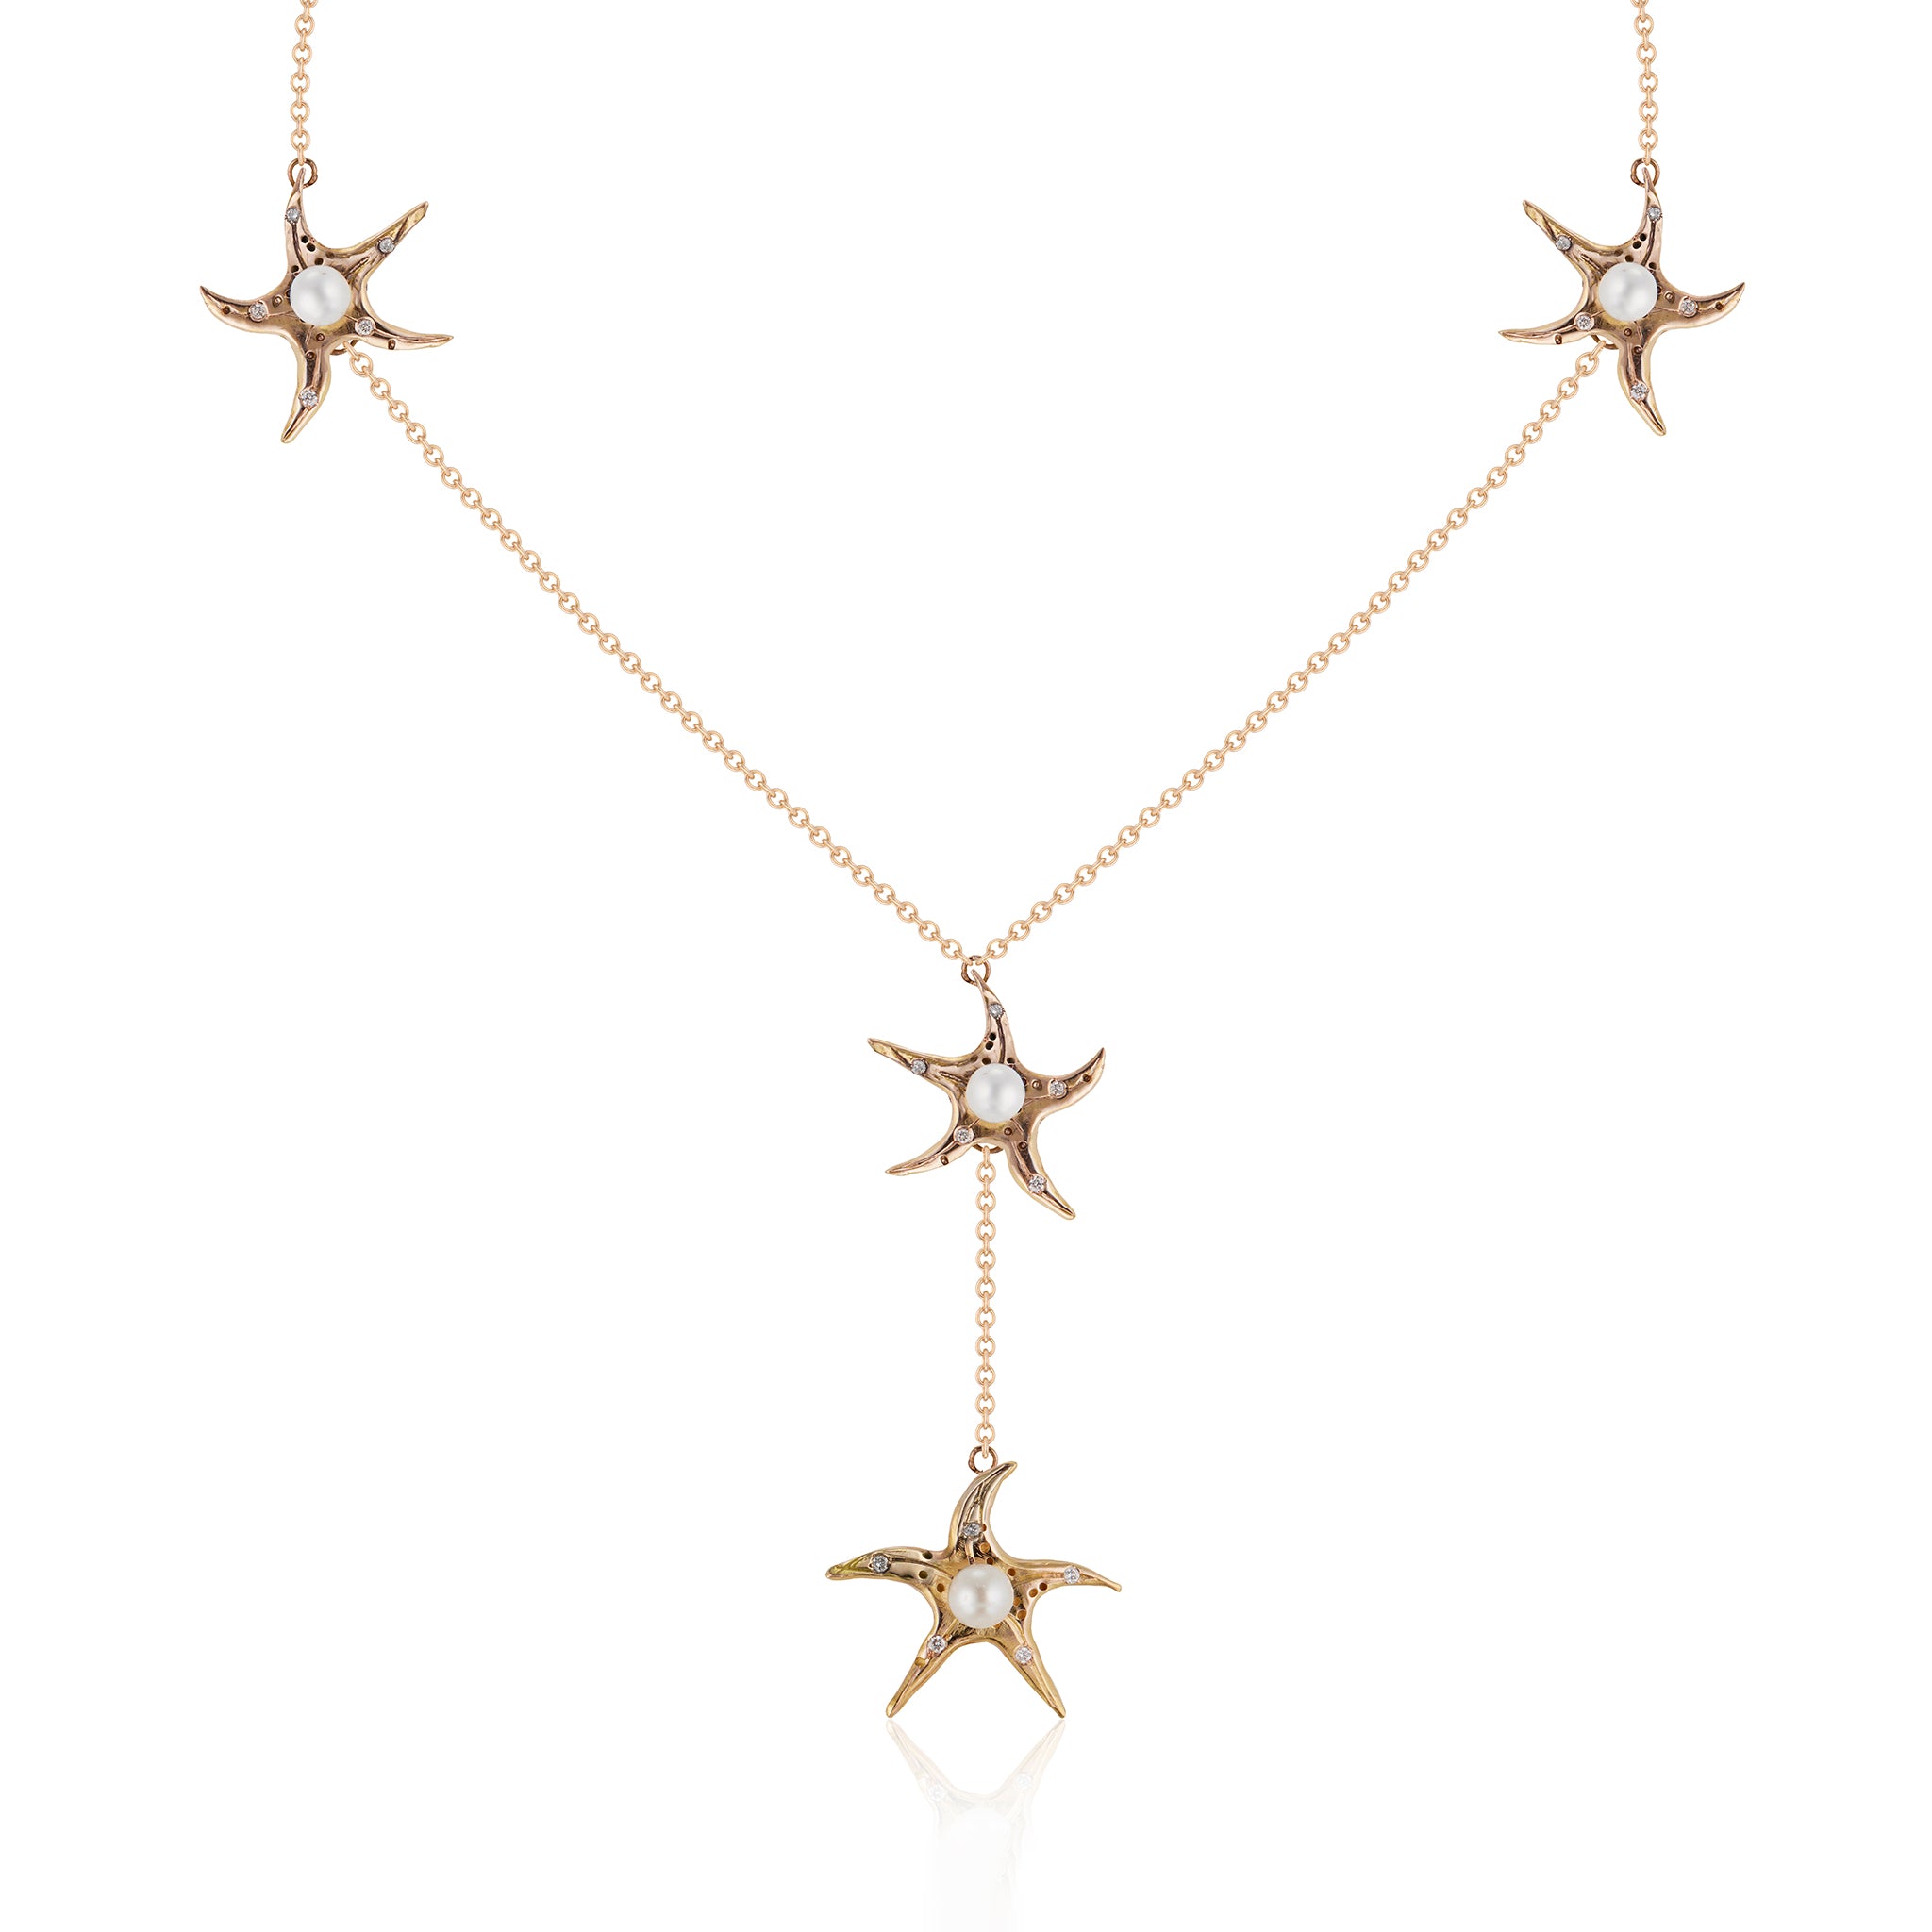 Dancing Sea Star Necklace